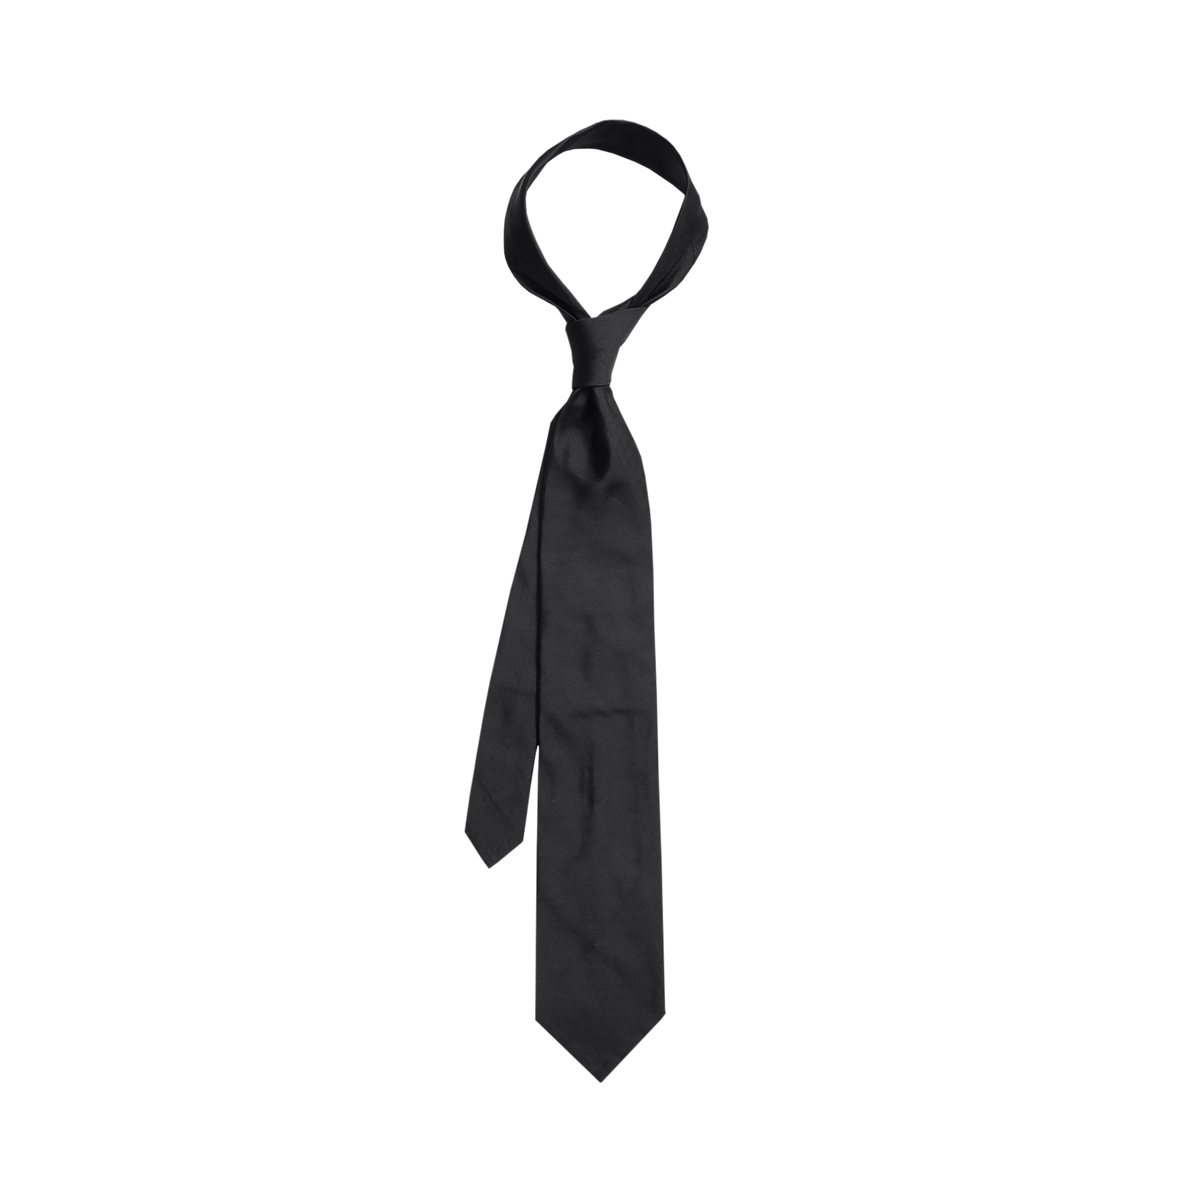 necktie clip art black and white